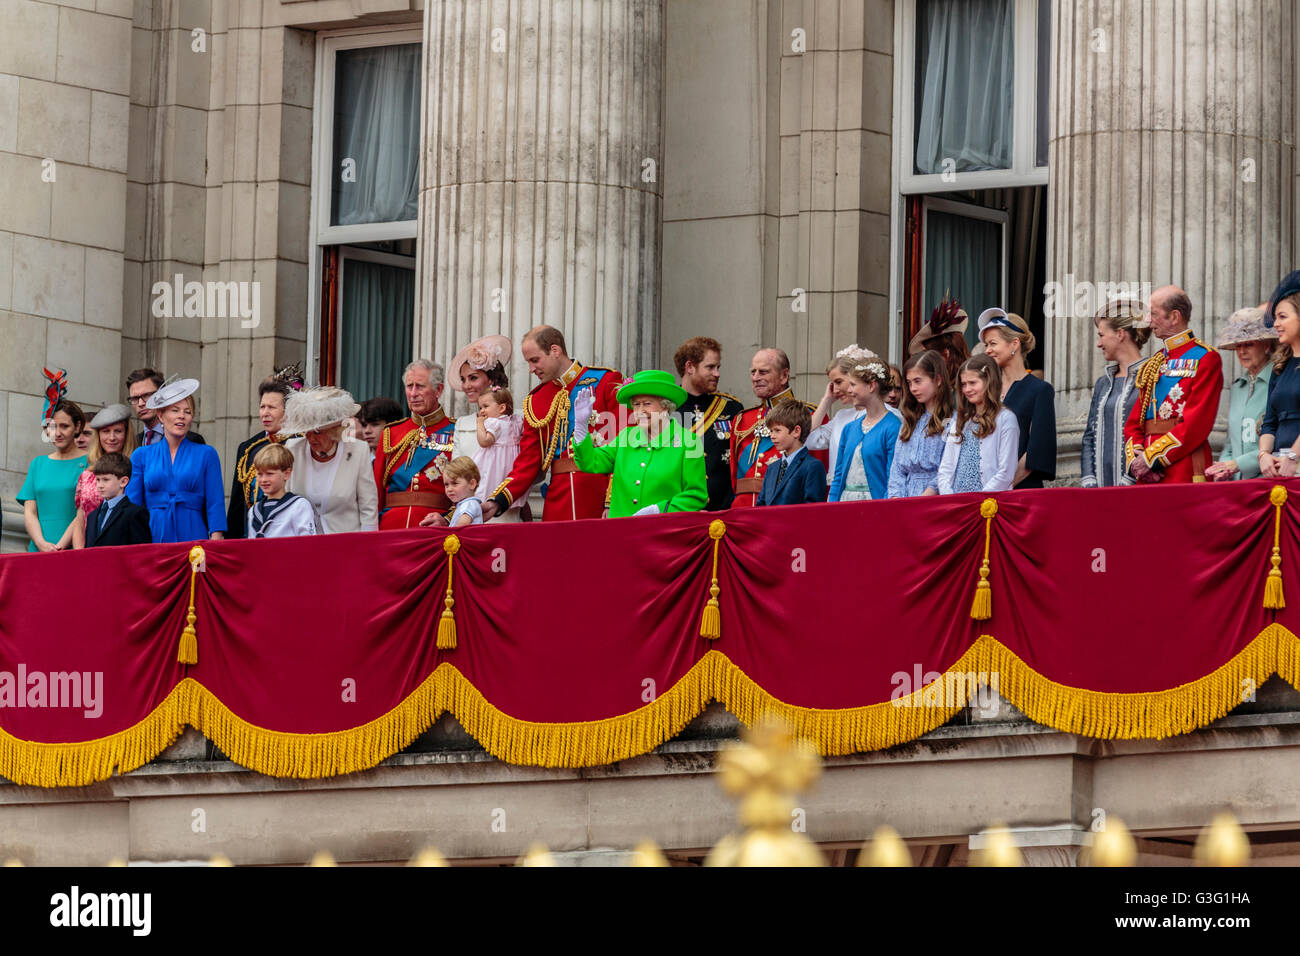 La famille royale célèbre l'anniversaire de la Reine sur le balcon de Buckingham Palace Londres Angleterre Royaume-Uni 2016 Banque D'Images